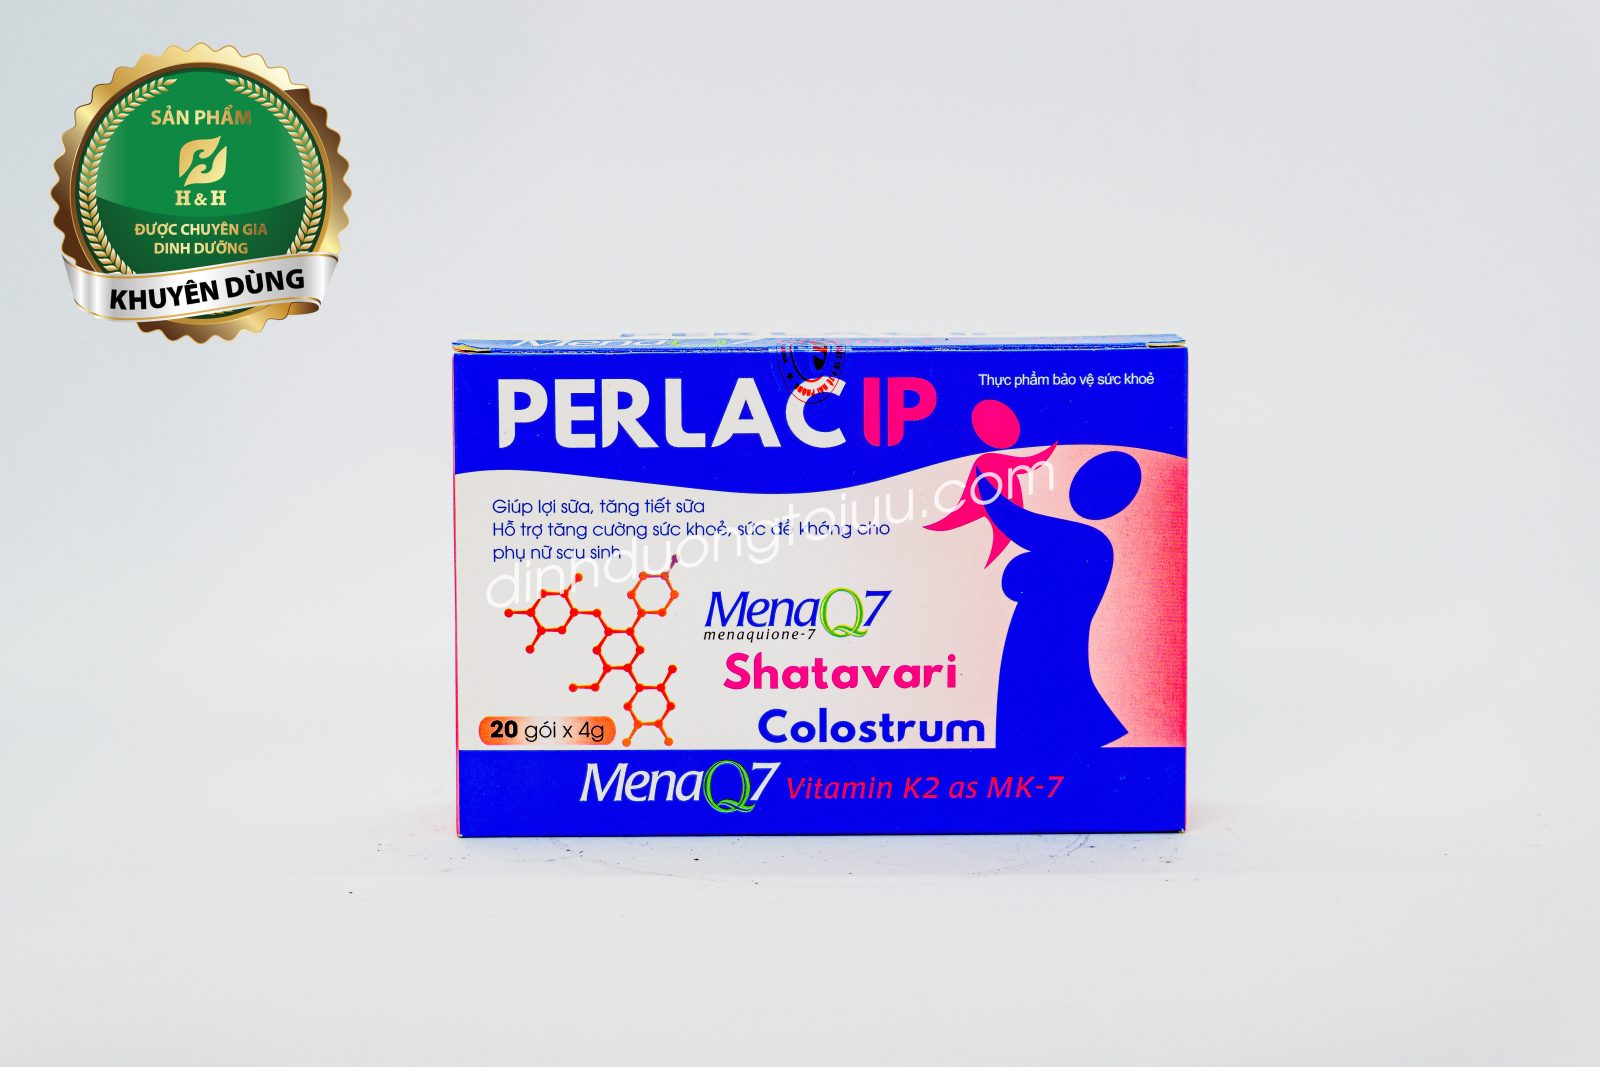 Cốm lợi sữa Perlac IP là sản phẩm giúp bổ sung Vitamin và dưỡng chất có lợi cho cơ thể người mẹ giúp lợi sữa, tăng chất lượng sữa